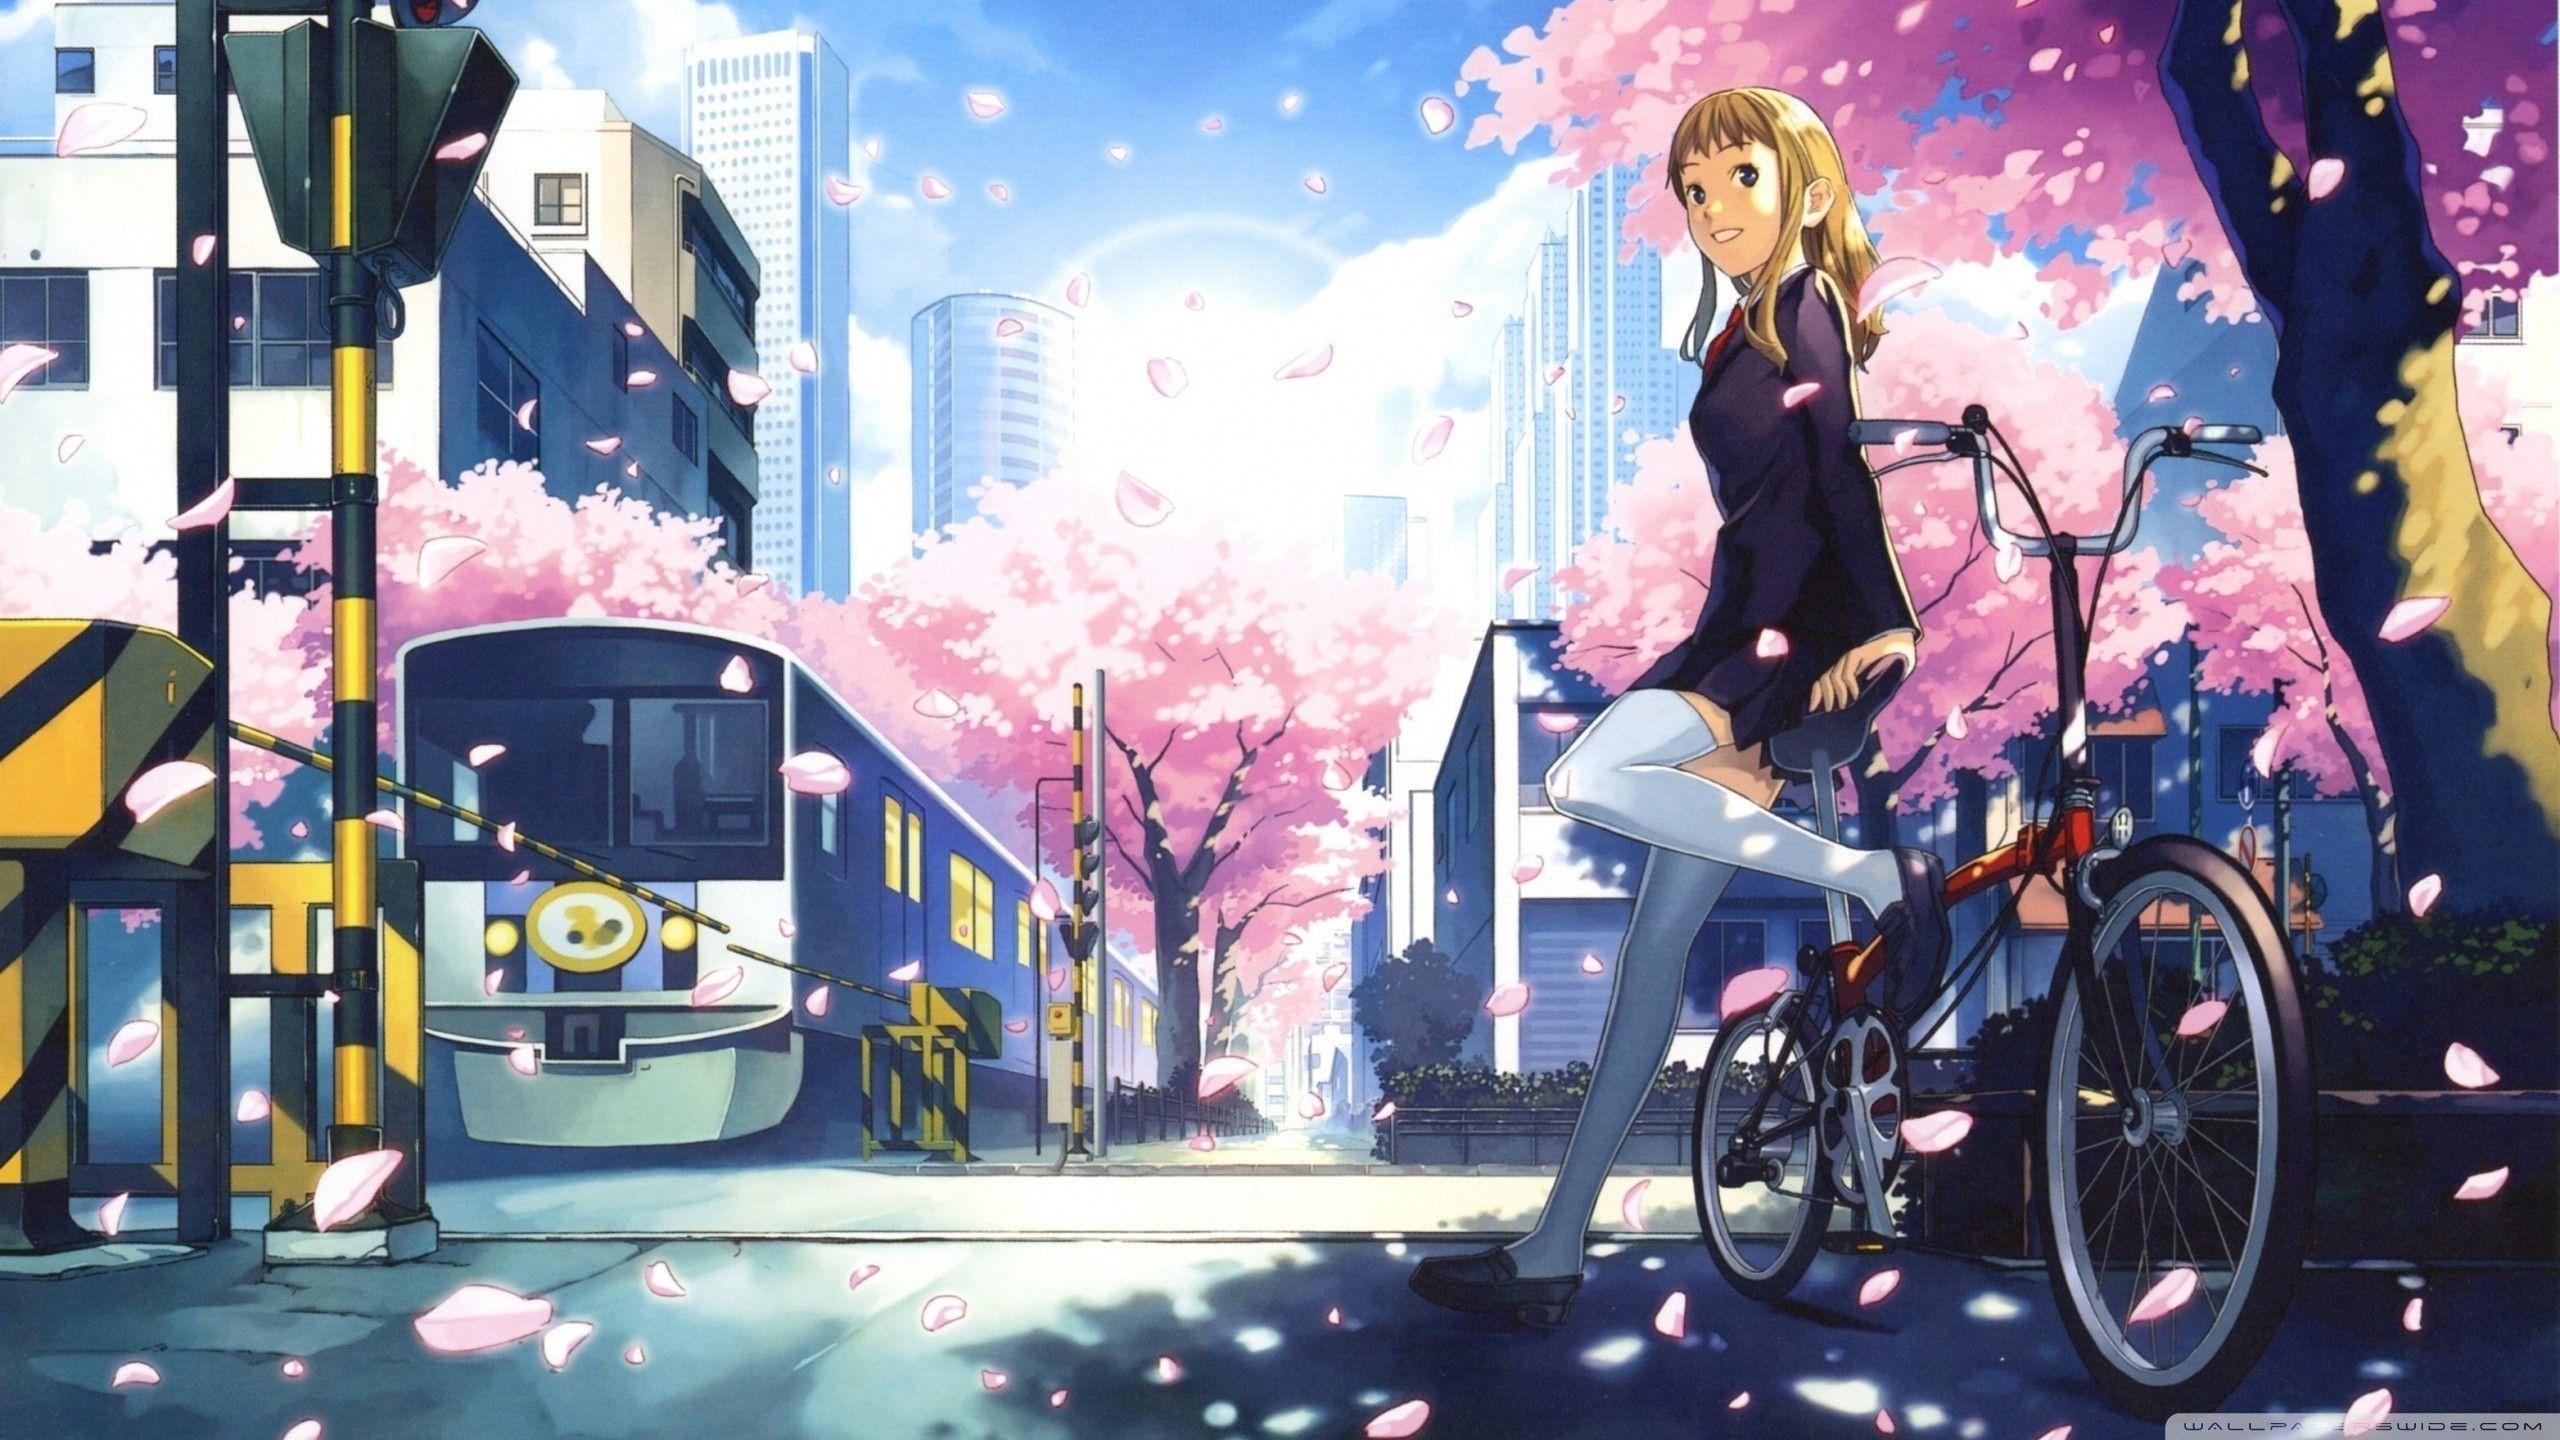 Aesthetic Anime Girl Desktop Wallpaper. contoh soal pelajaran puisi dan pidato populer